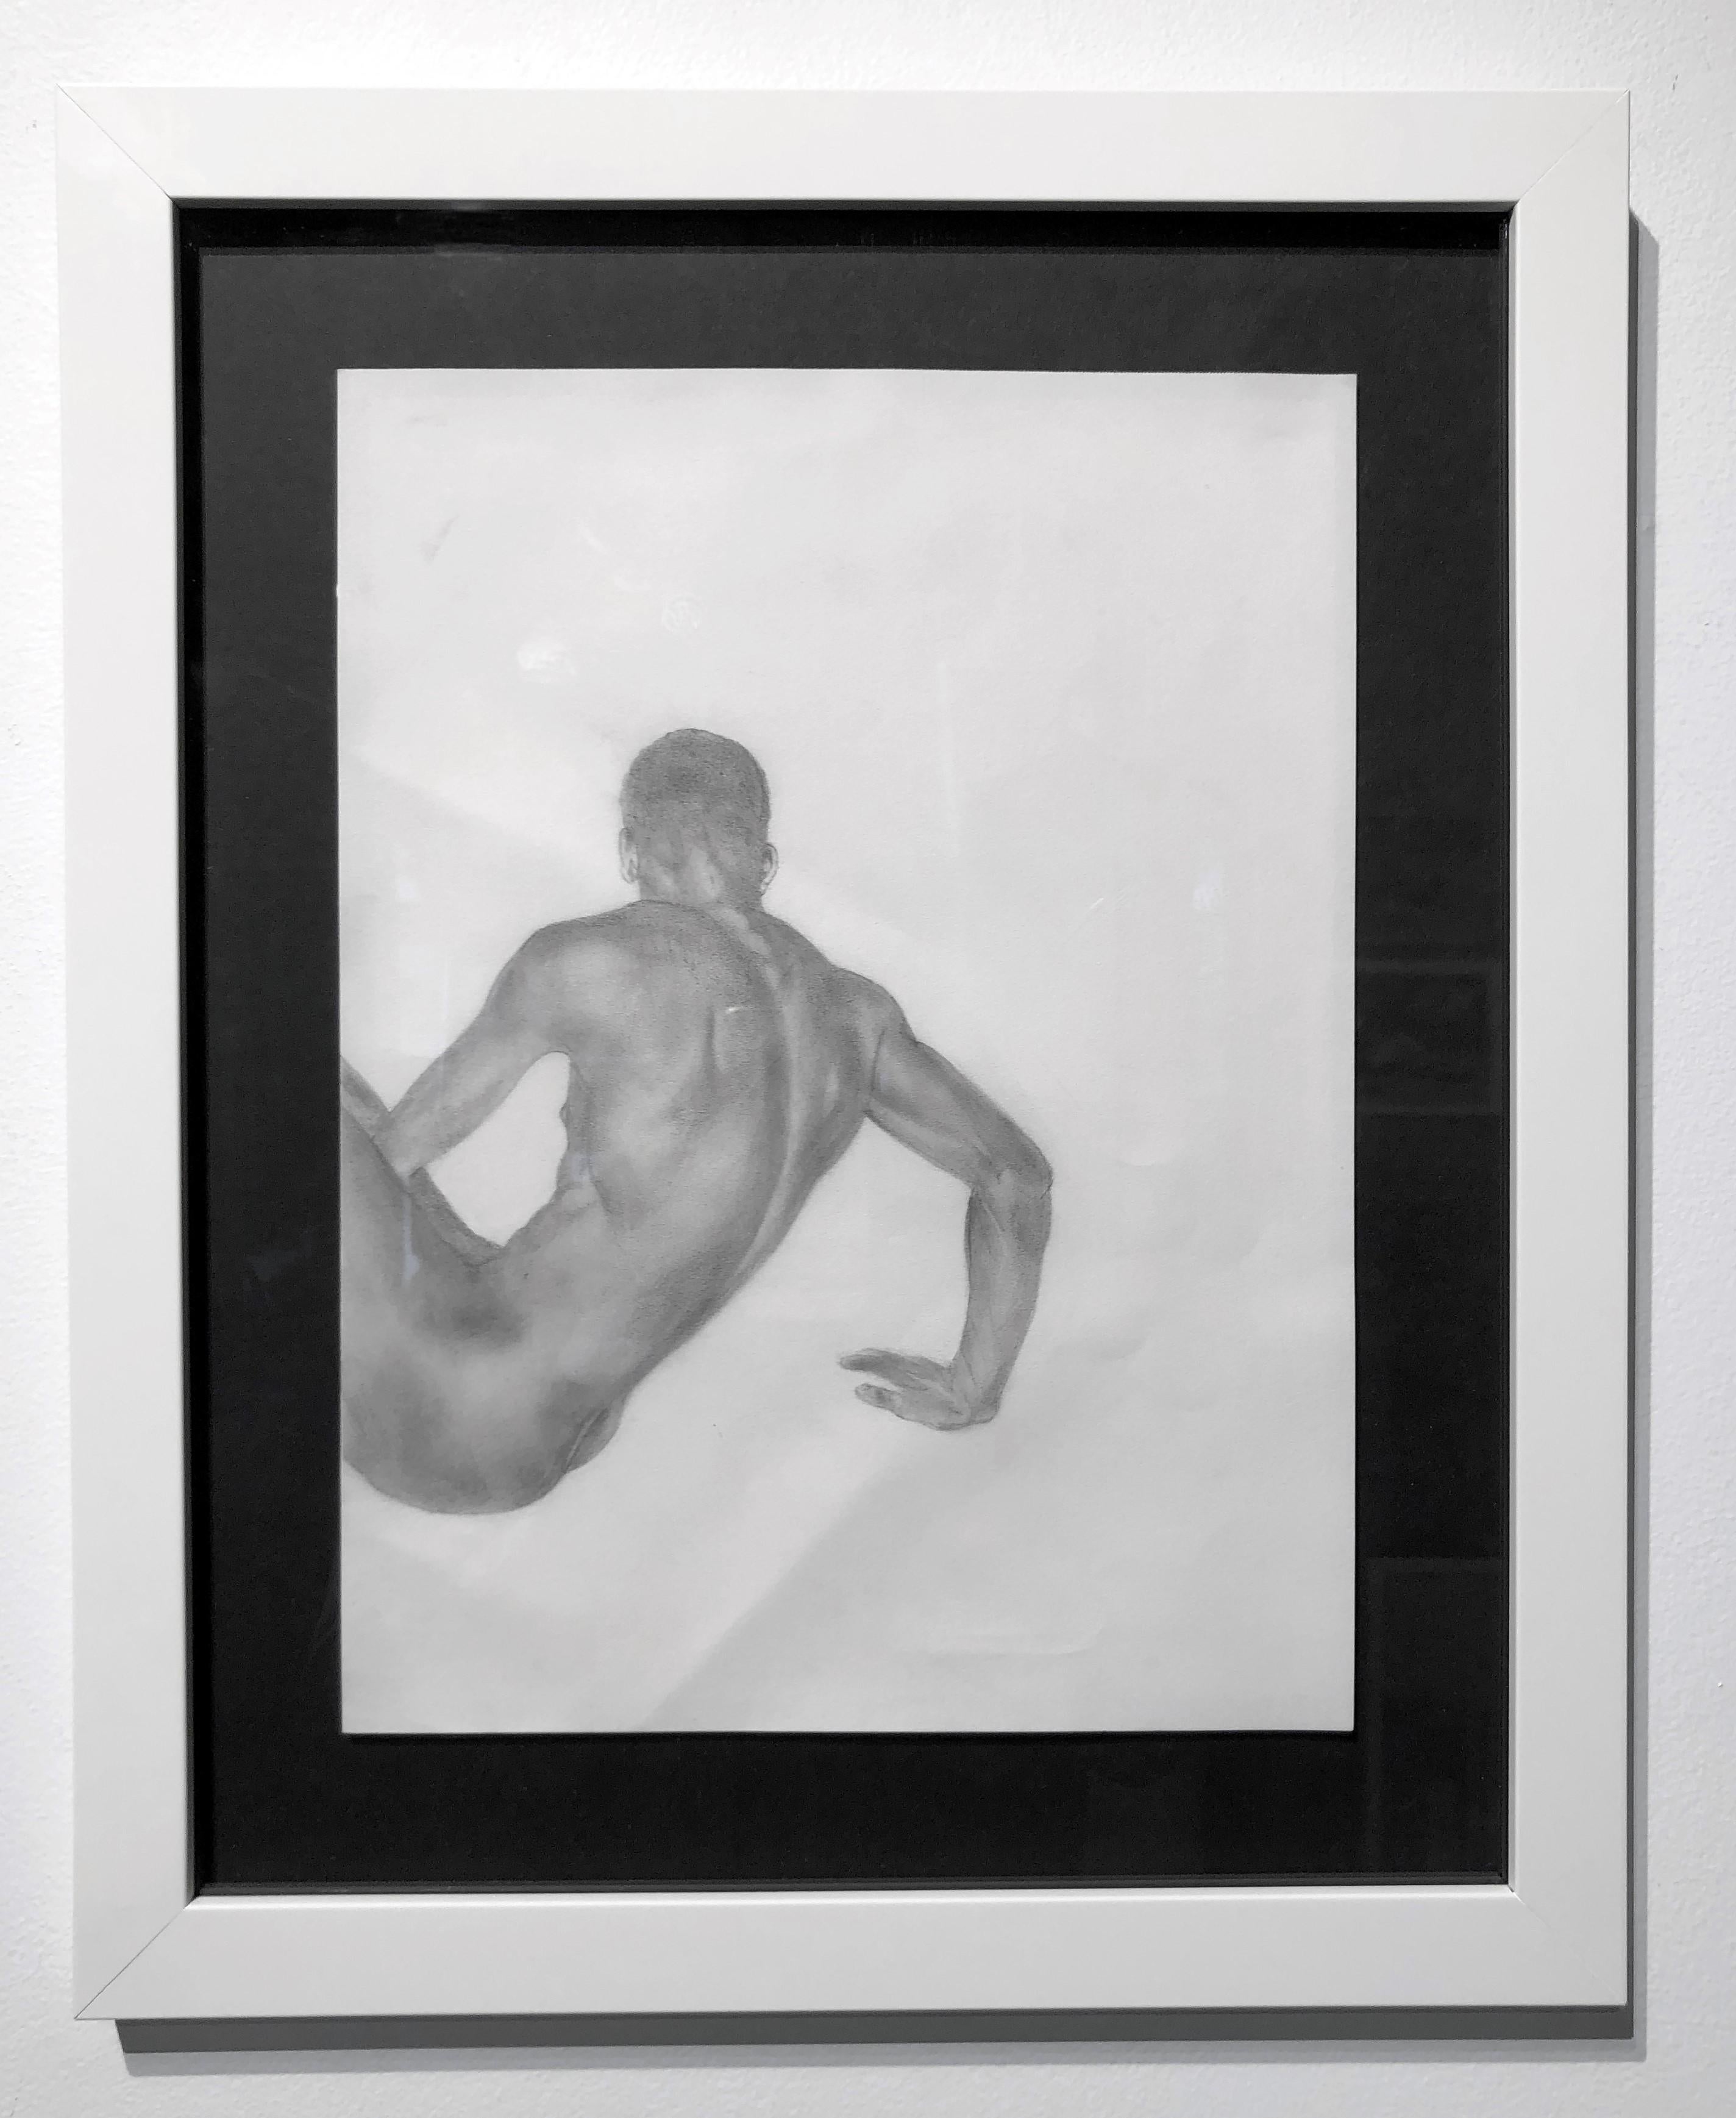 Der Körper ist eine Geschichte - Muscular Male Nude, Graphitzeichnung auf Papier (Zeitgenössisch), Art, von Rick Sindt